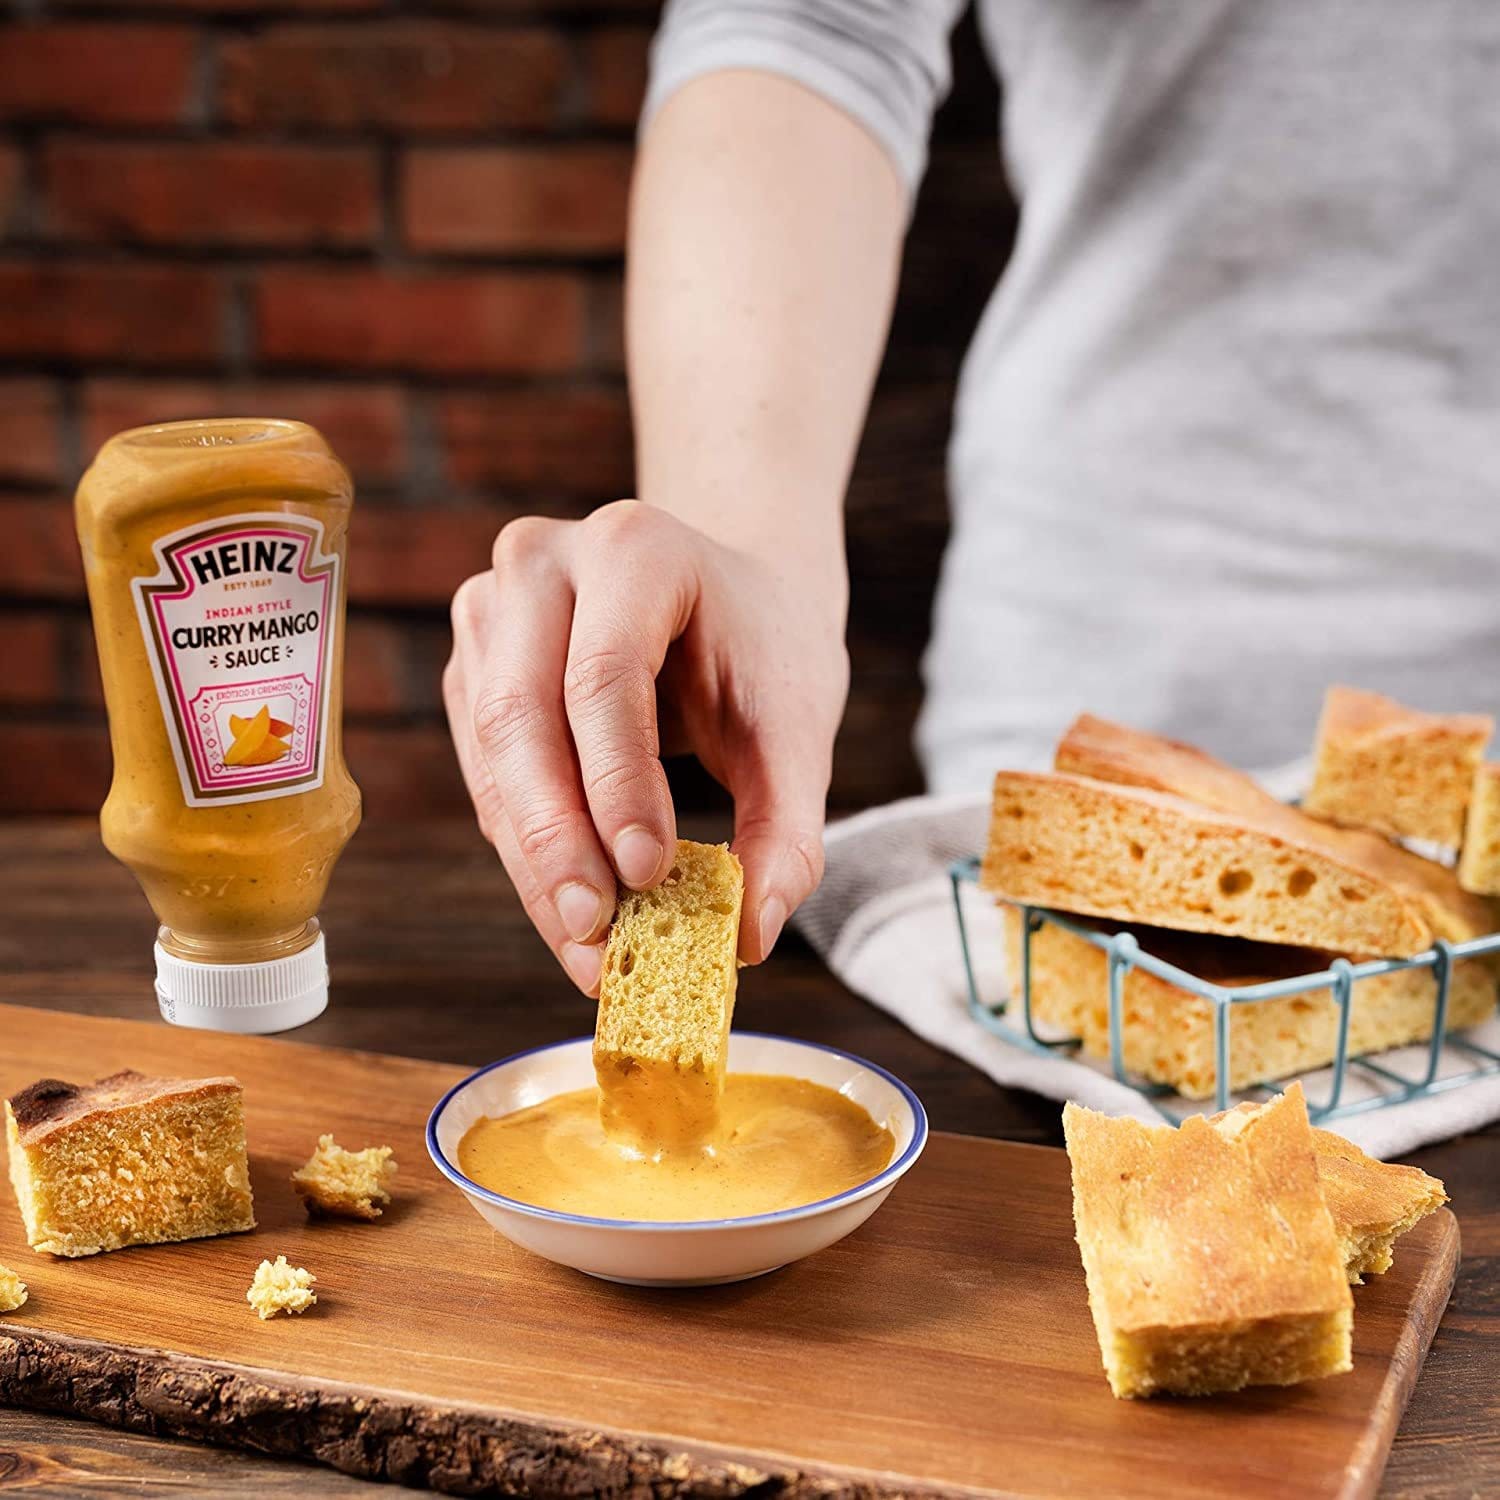 Un bol blanc avec une sauce orangée sur une planche en bois et une main qui y trempe un bout de pain. A gauche une bouteille de sauce orange Heinz et à droite un panier de pain